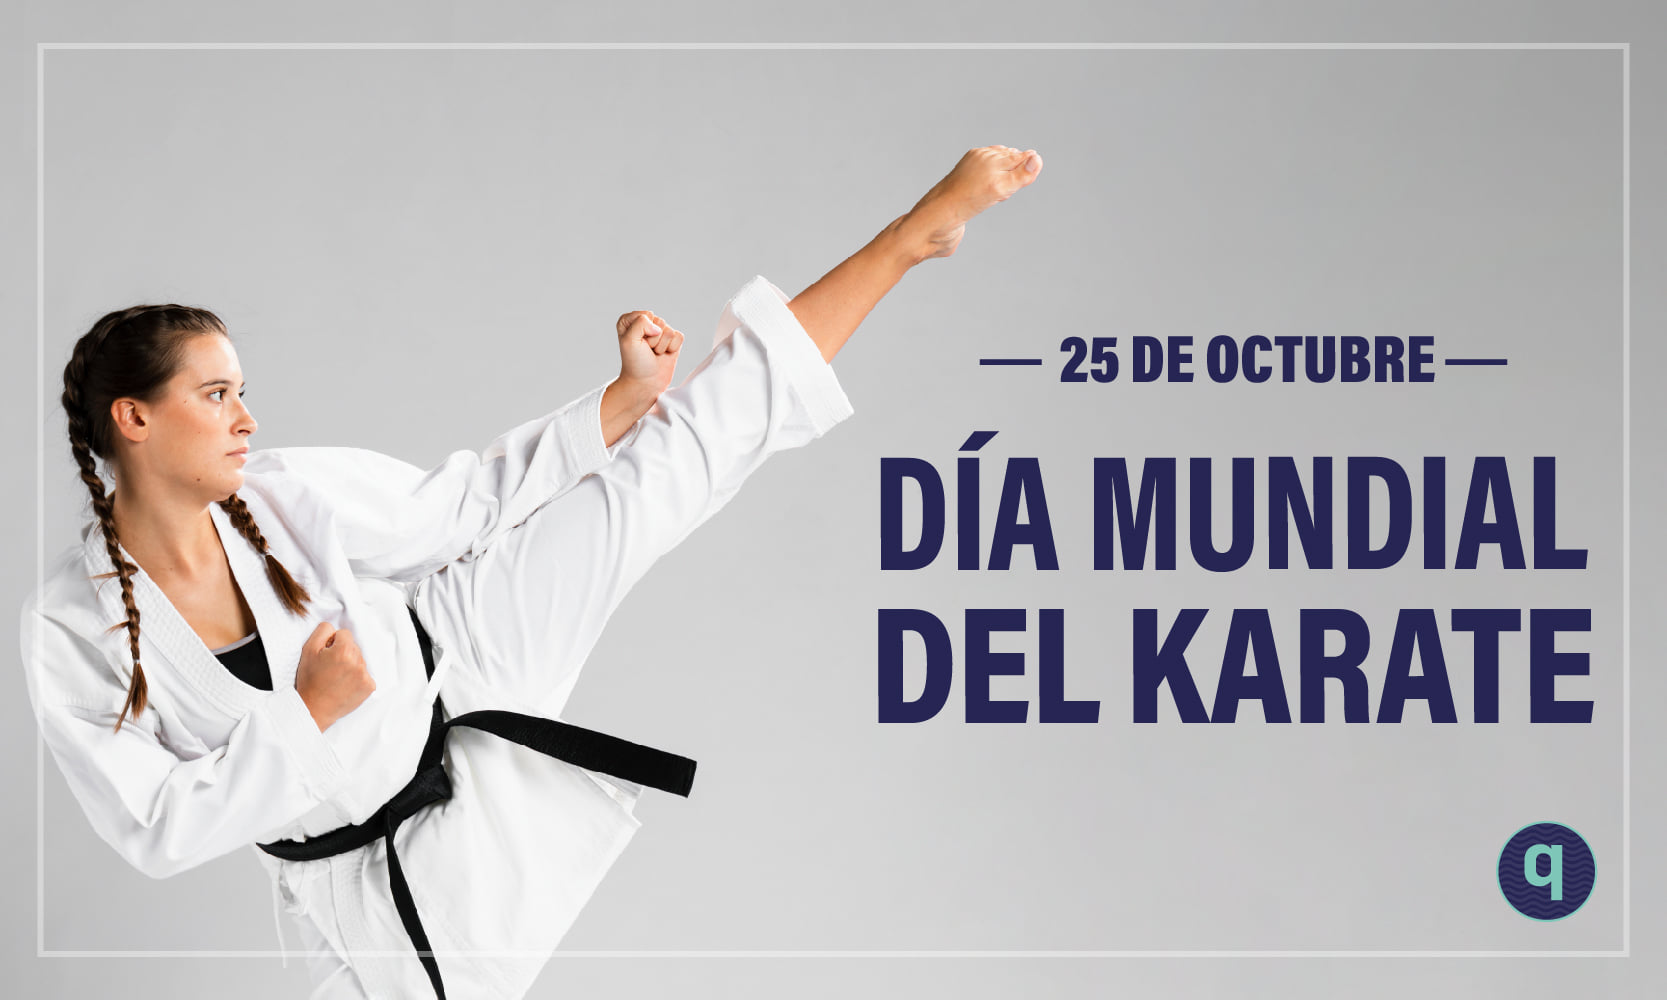 El 25 de octubre se celebra el Día Mundial del Karate